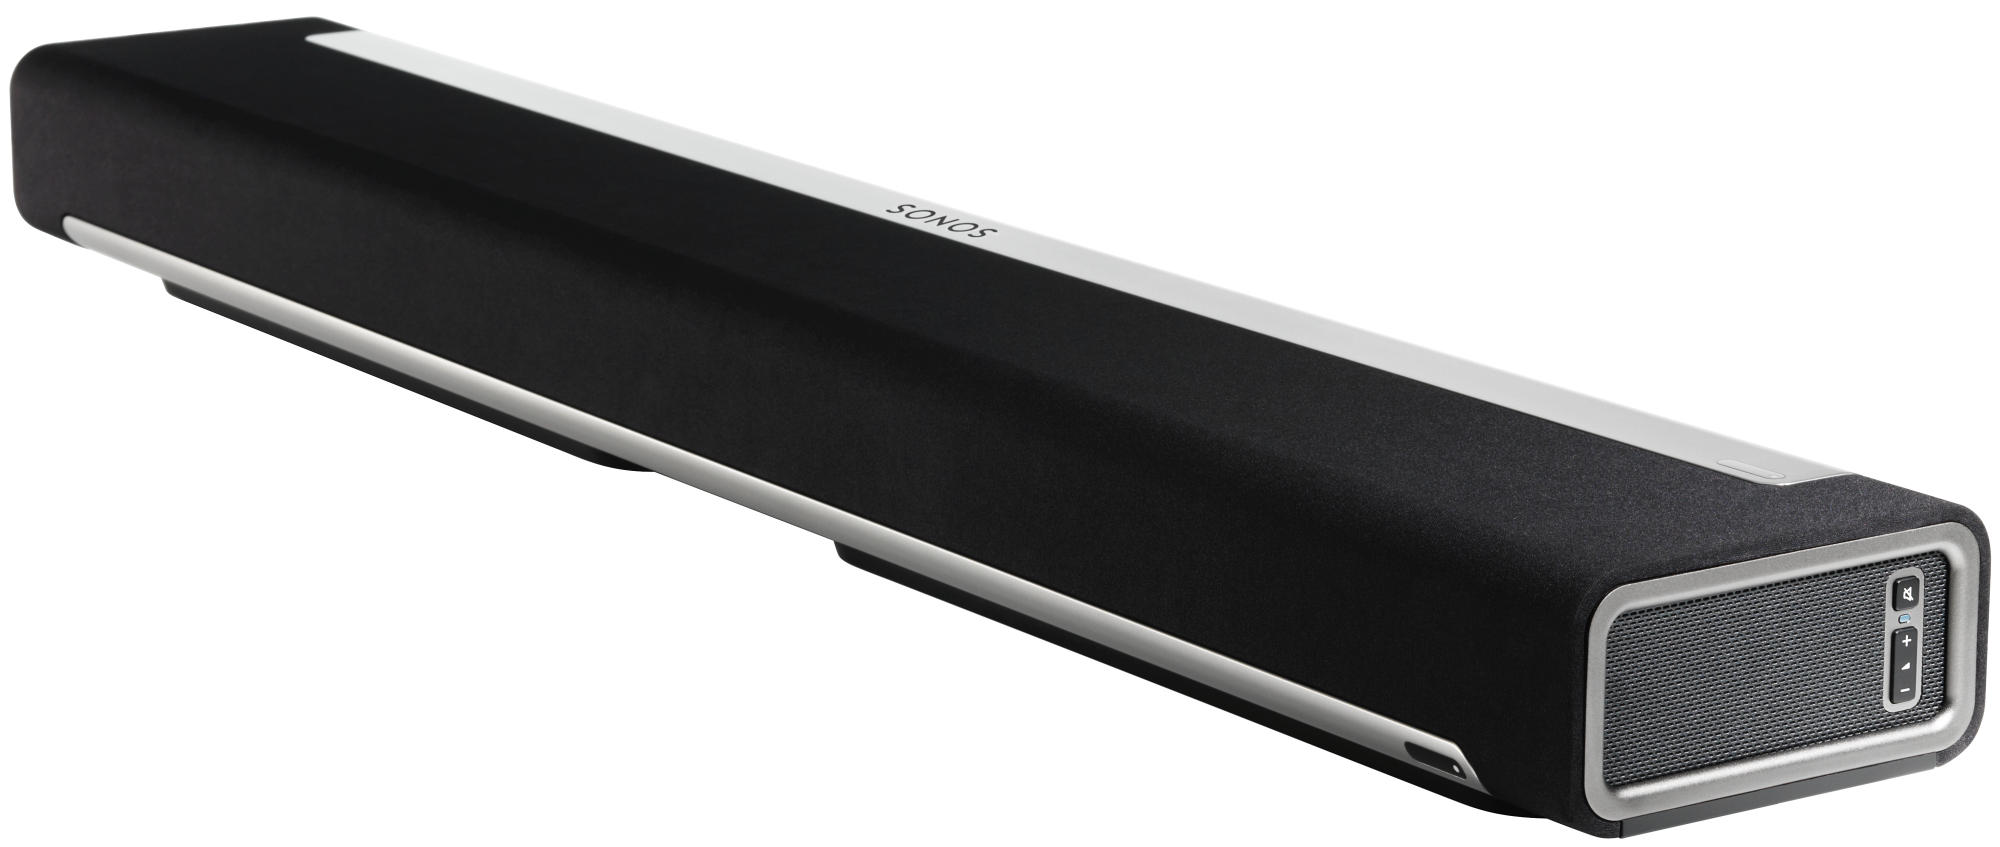 Barra De Sonido playbar hifi envolvente para cine casa y altavoz compatible con airplay color negro 5.1 240 subwoofer cables